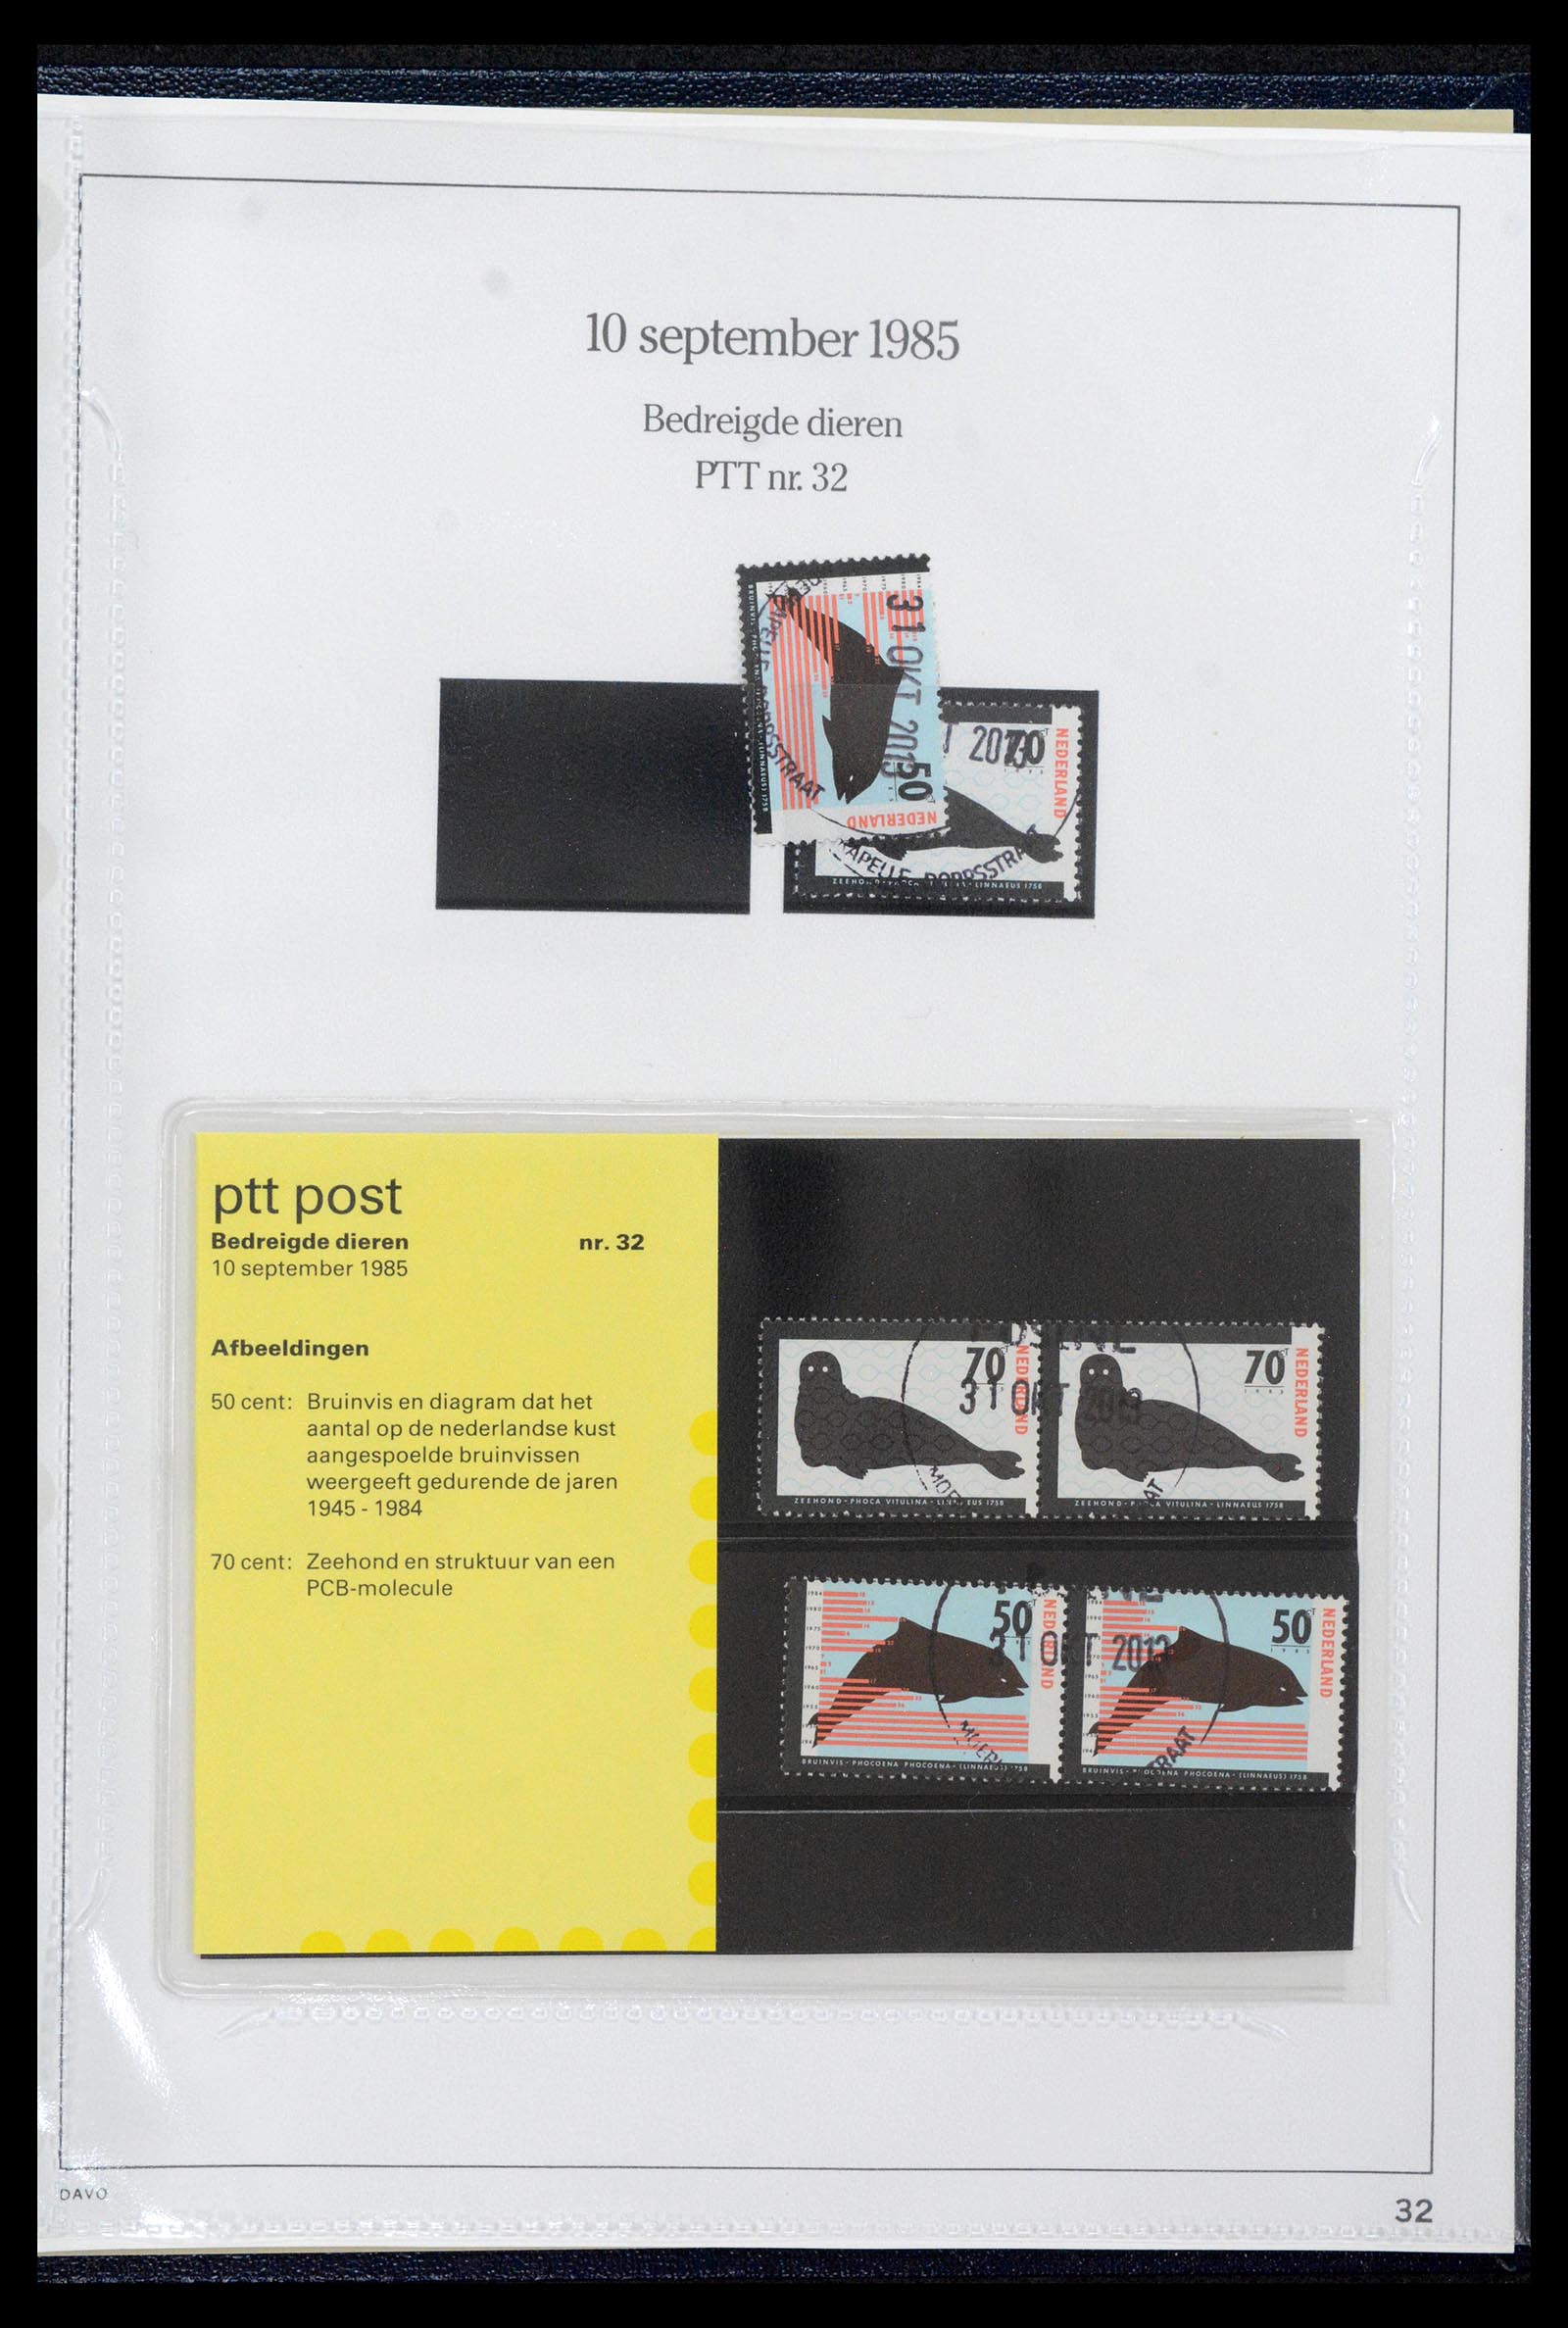 39121 0032 - Stamp collection 39121 Netherlands presentationpacks 1982-2001.